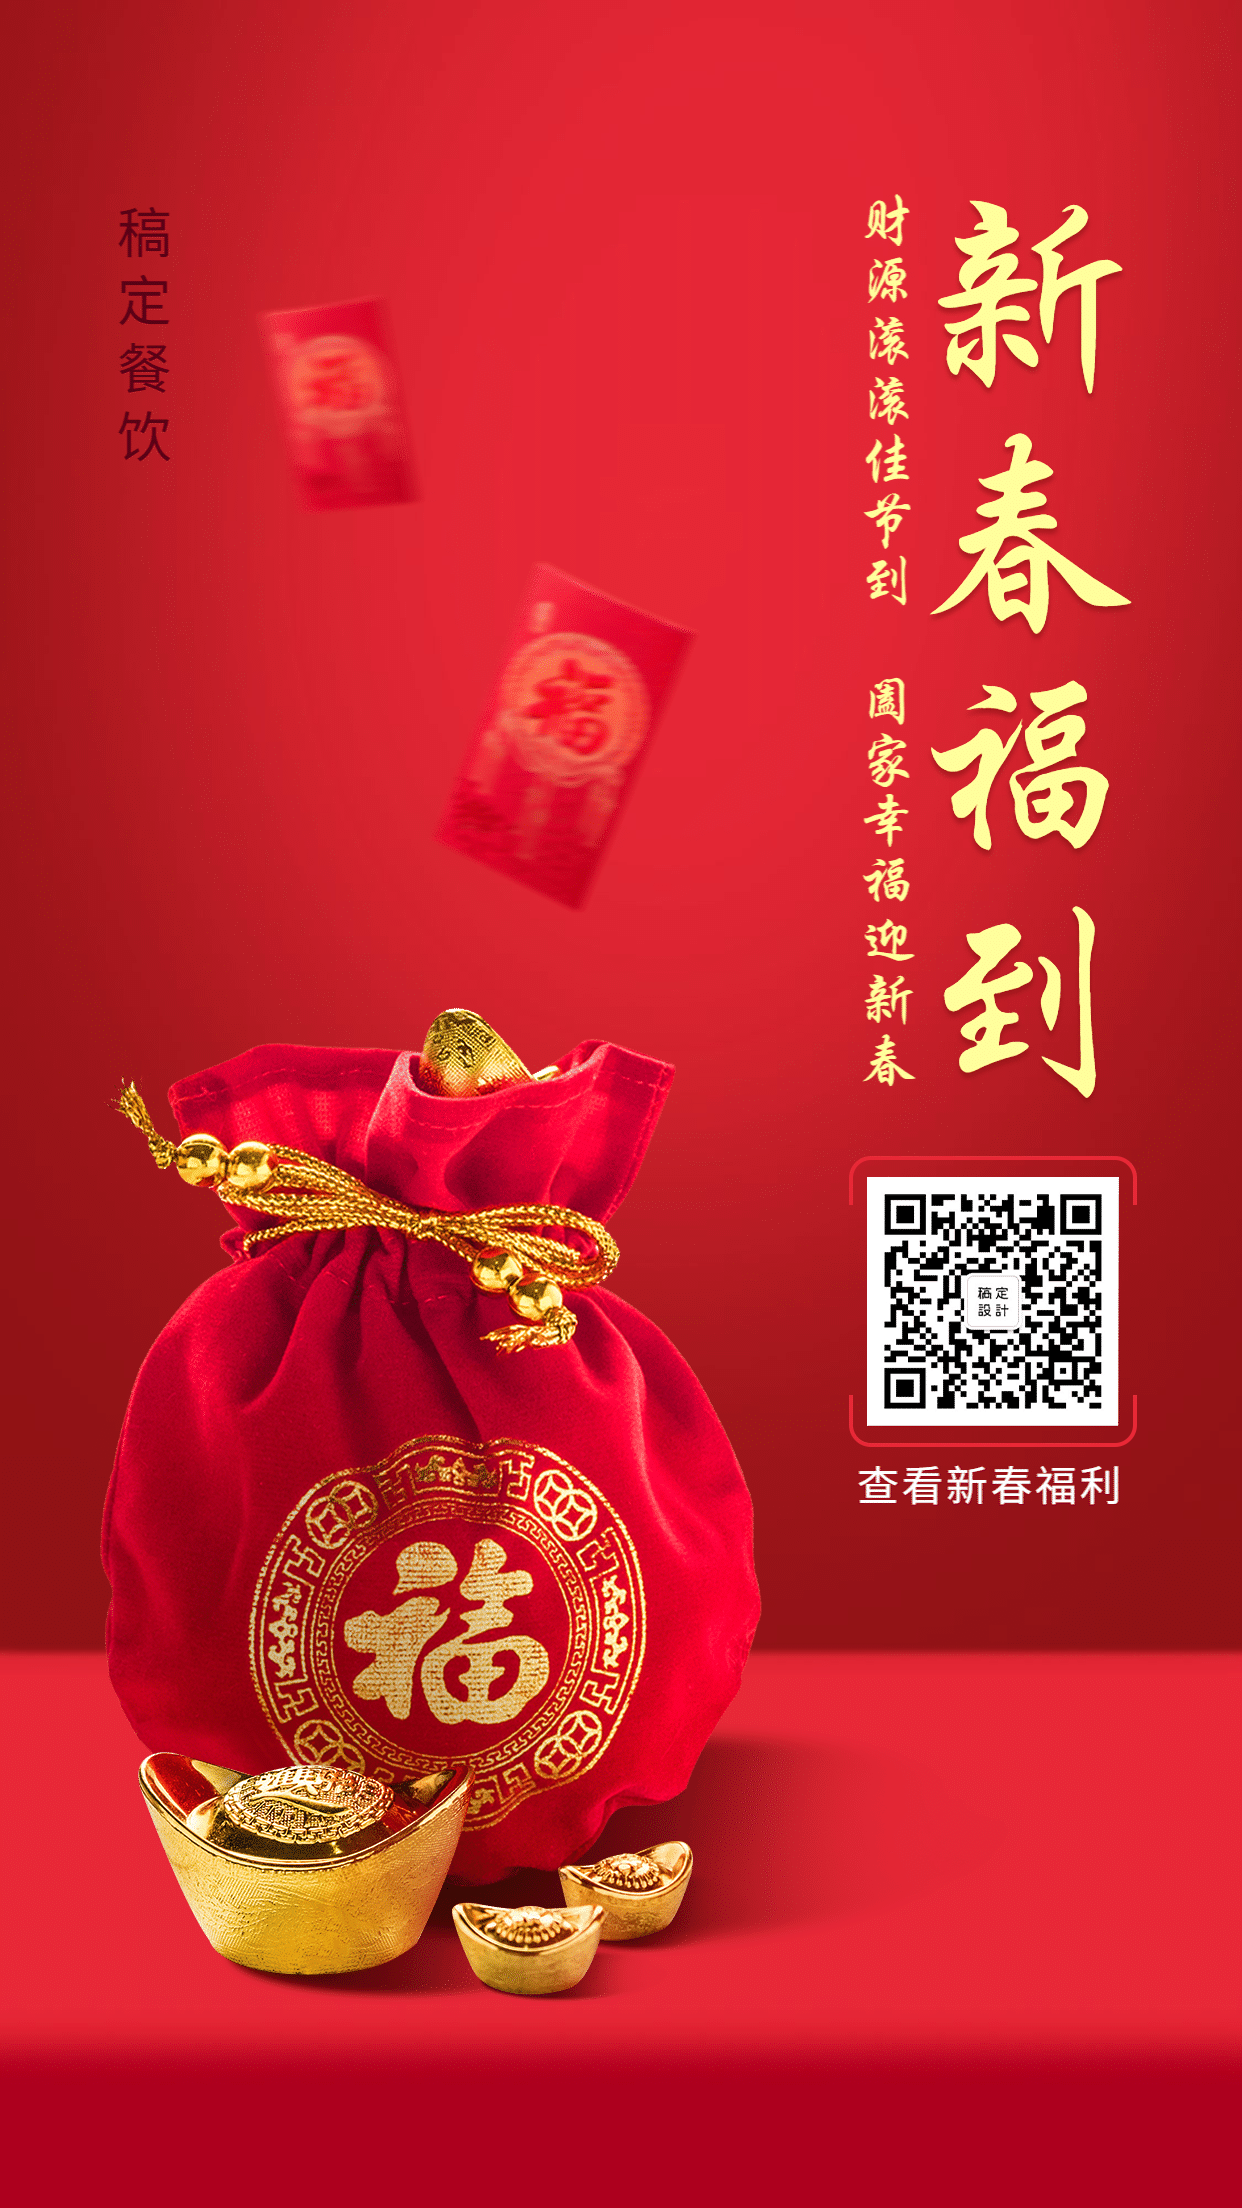 春节新年喜庆祝福手机海报